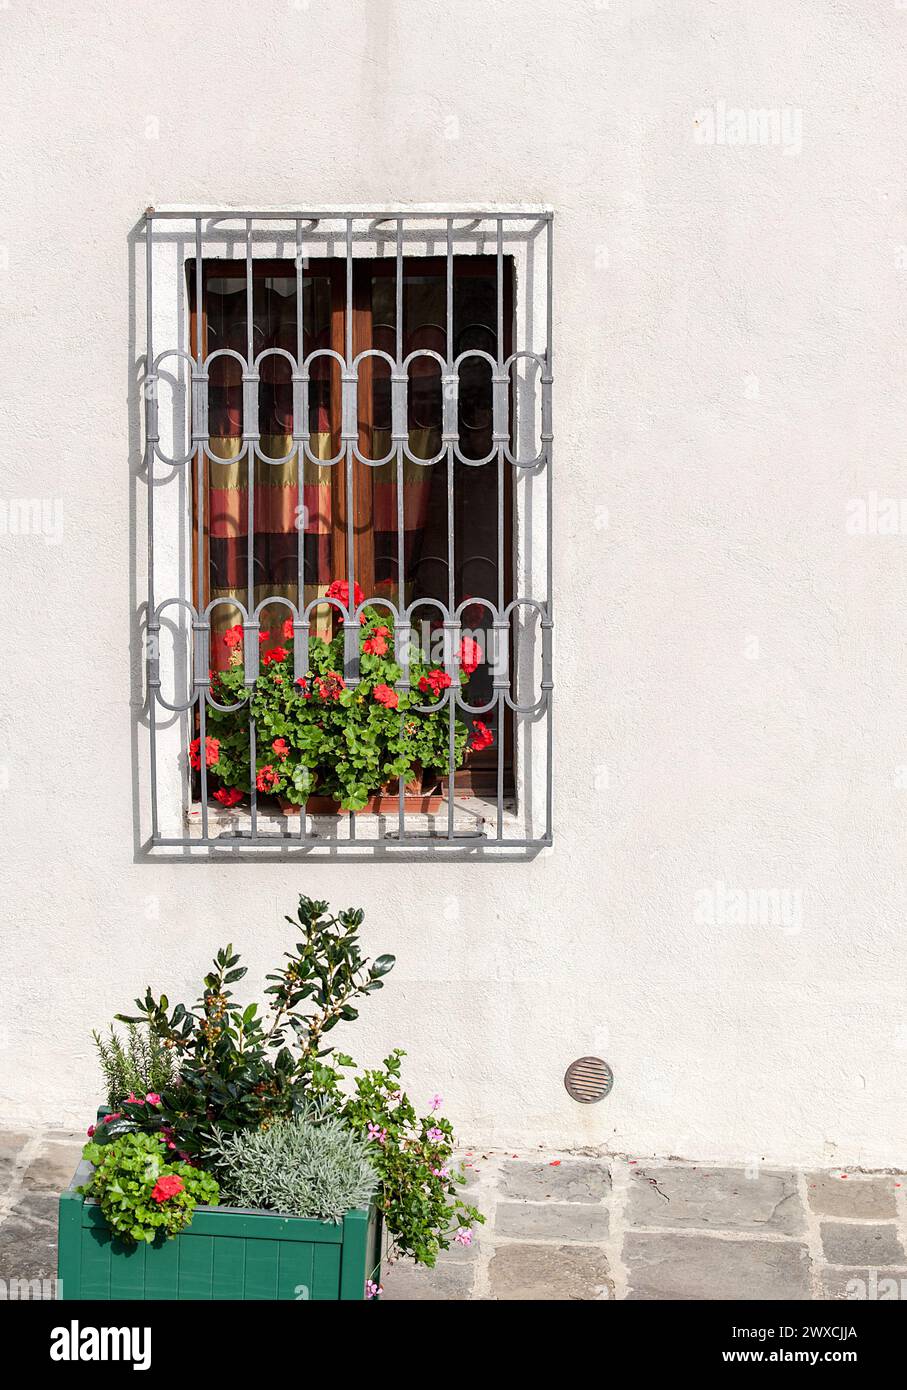 vetrina e fioriera sulla parete in stucco Foto Stock